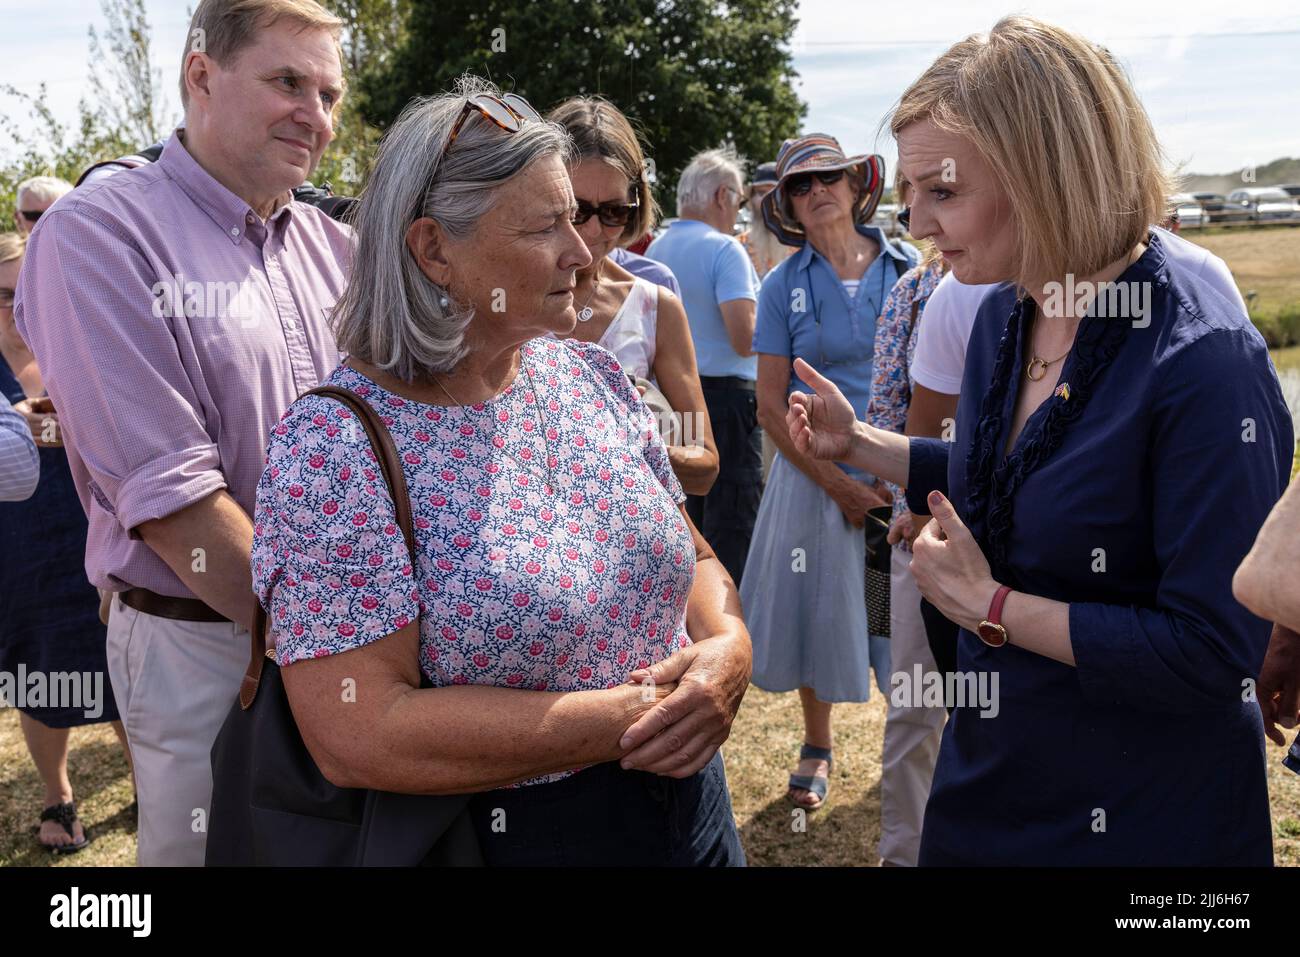 Liz Truss, ministro degli Esteri e candidato alla leadership del partito conservatore, incontra i membri del partito conservatore nel villaggio di Marden, Kent, Regno Unito Foto Stock